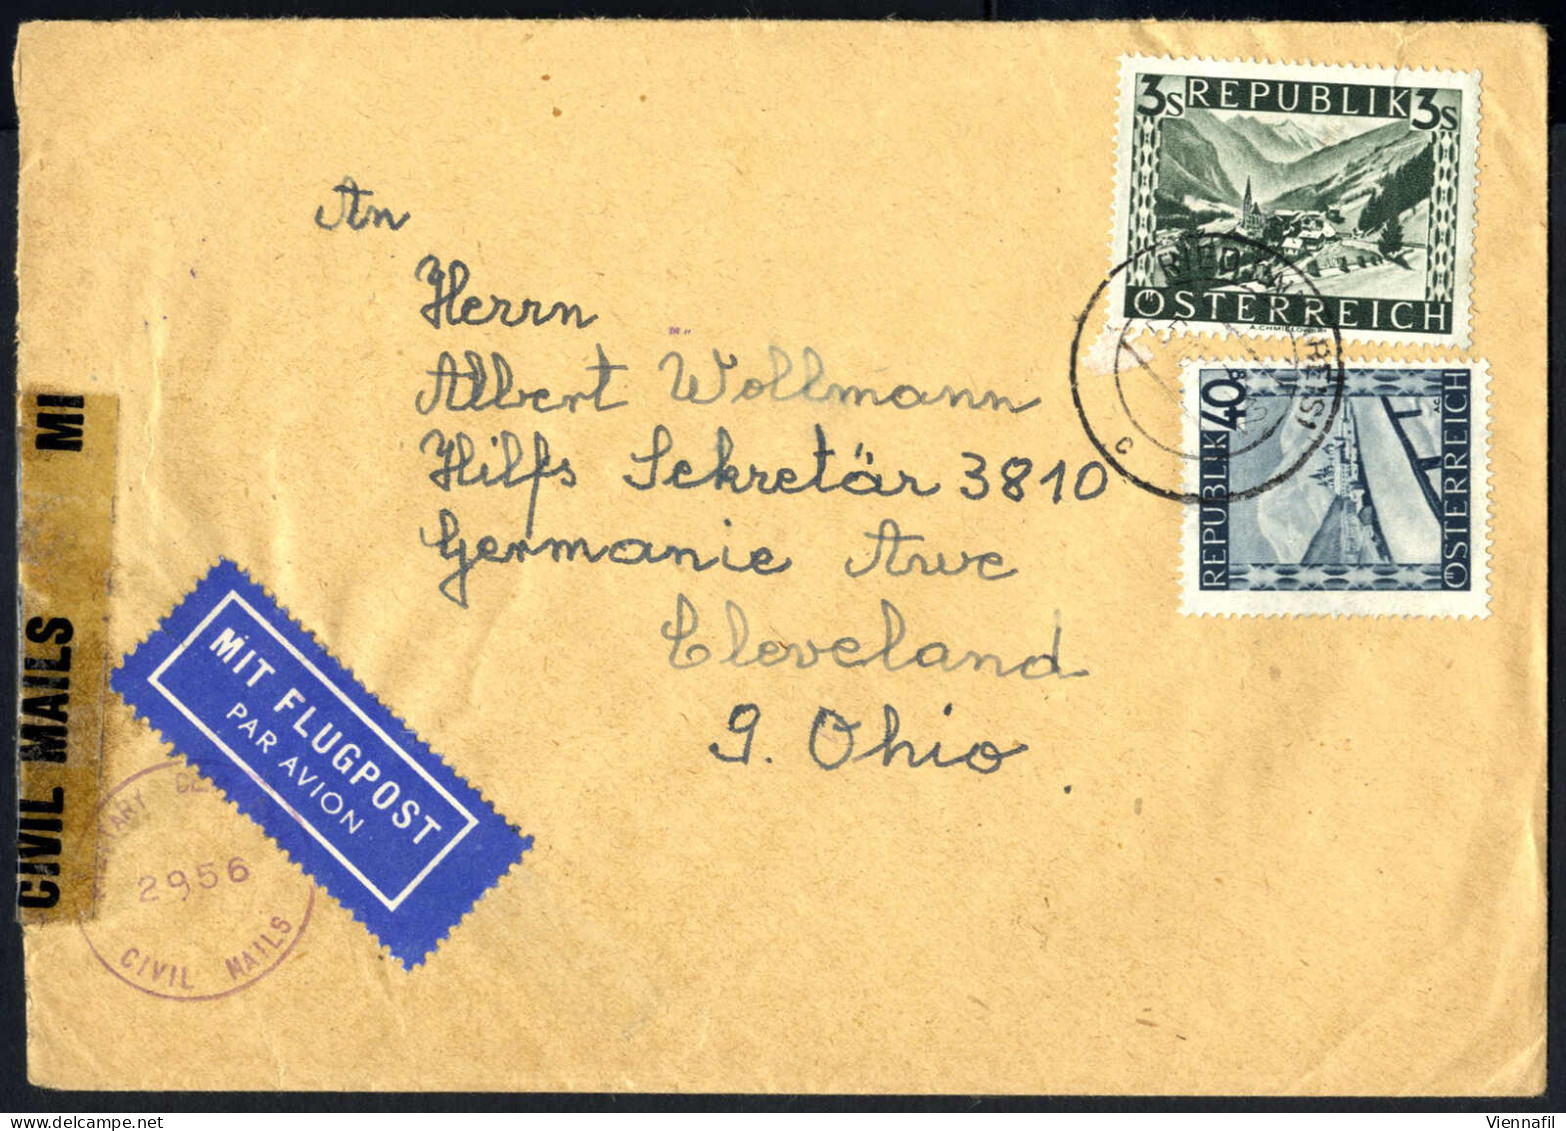 cover 1947, 6 Luftpostbriefe, fünf frankiert mit "bunten Landschaften" und einer mit Luftpost 1947 3 S. braun, fünf davo